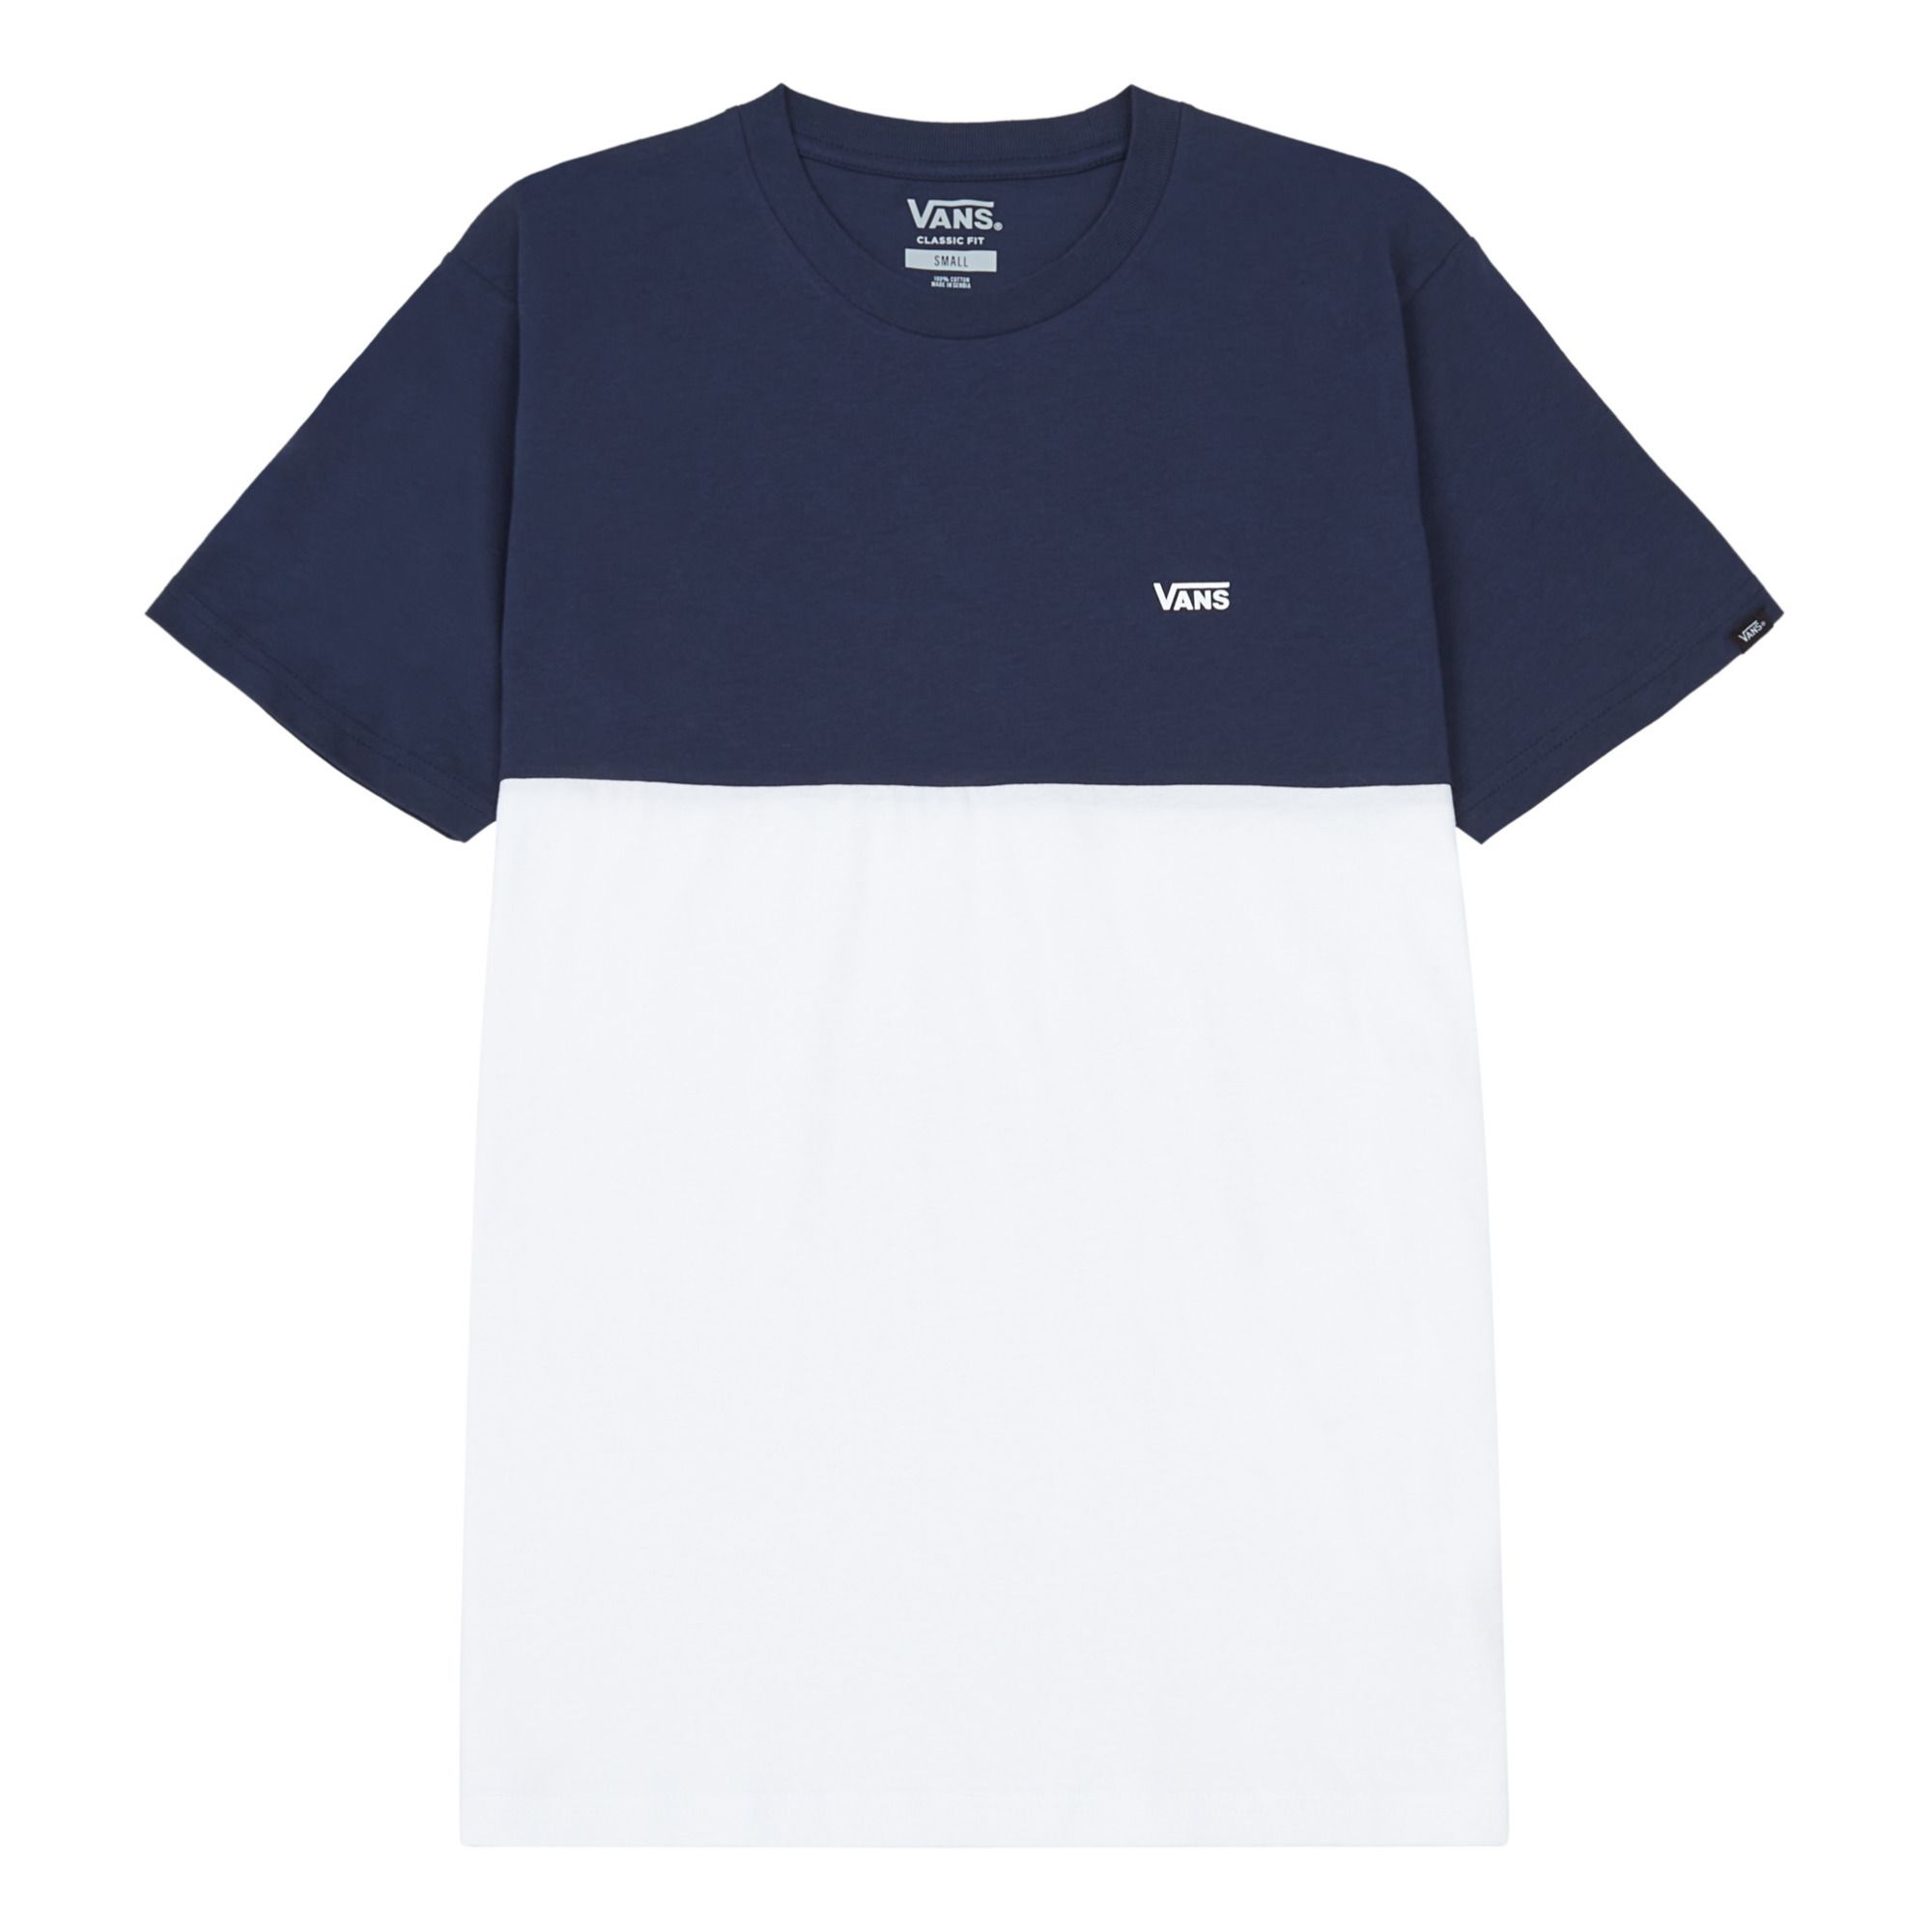 Vans - T-shirt Bicolore - Collection Adulte - - Homme - Bleu